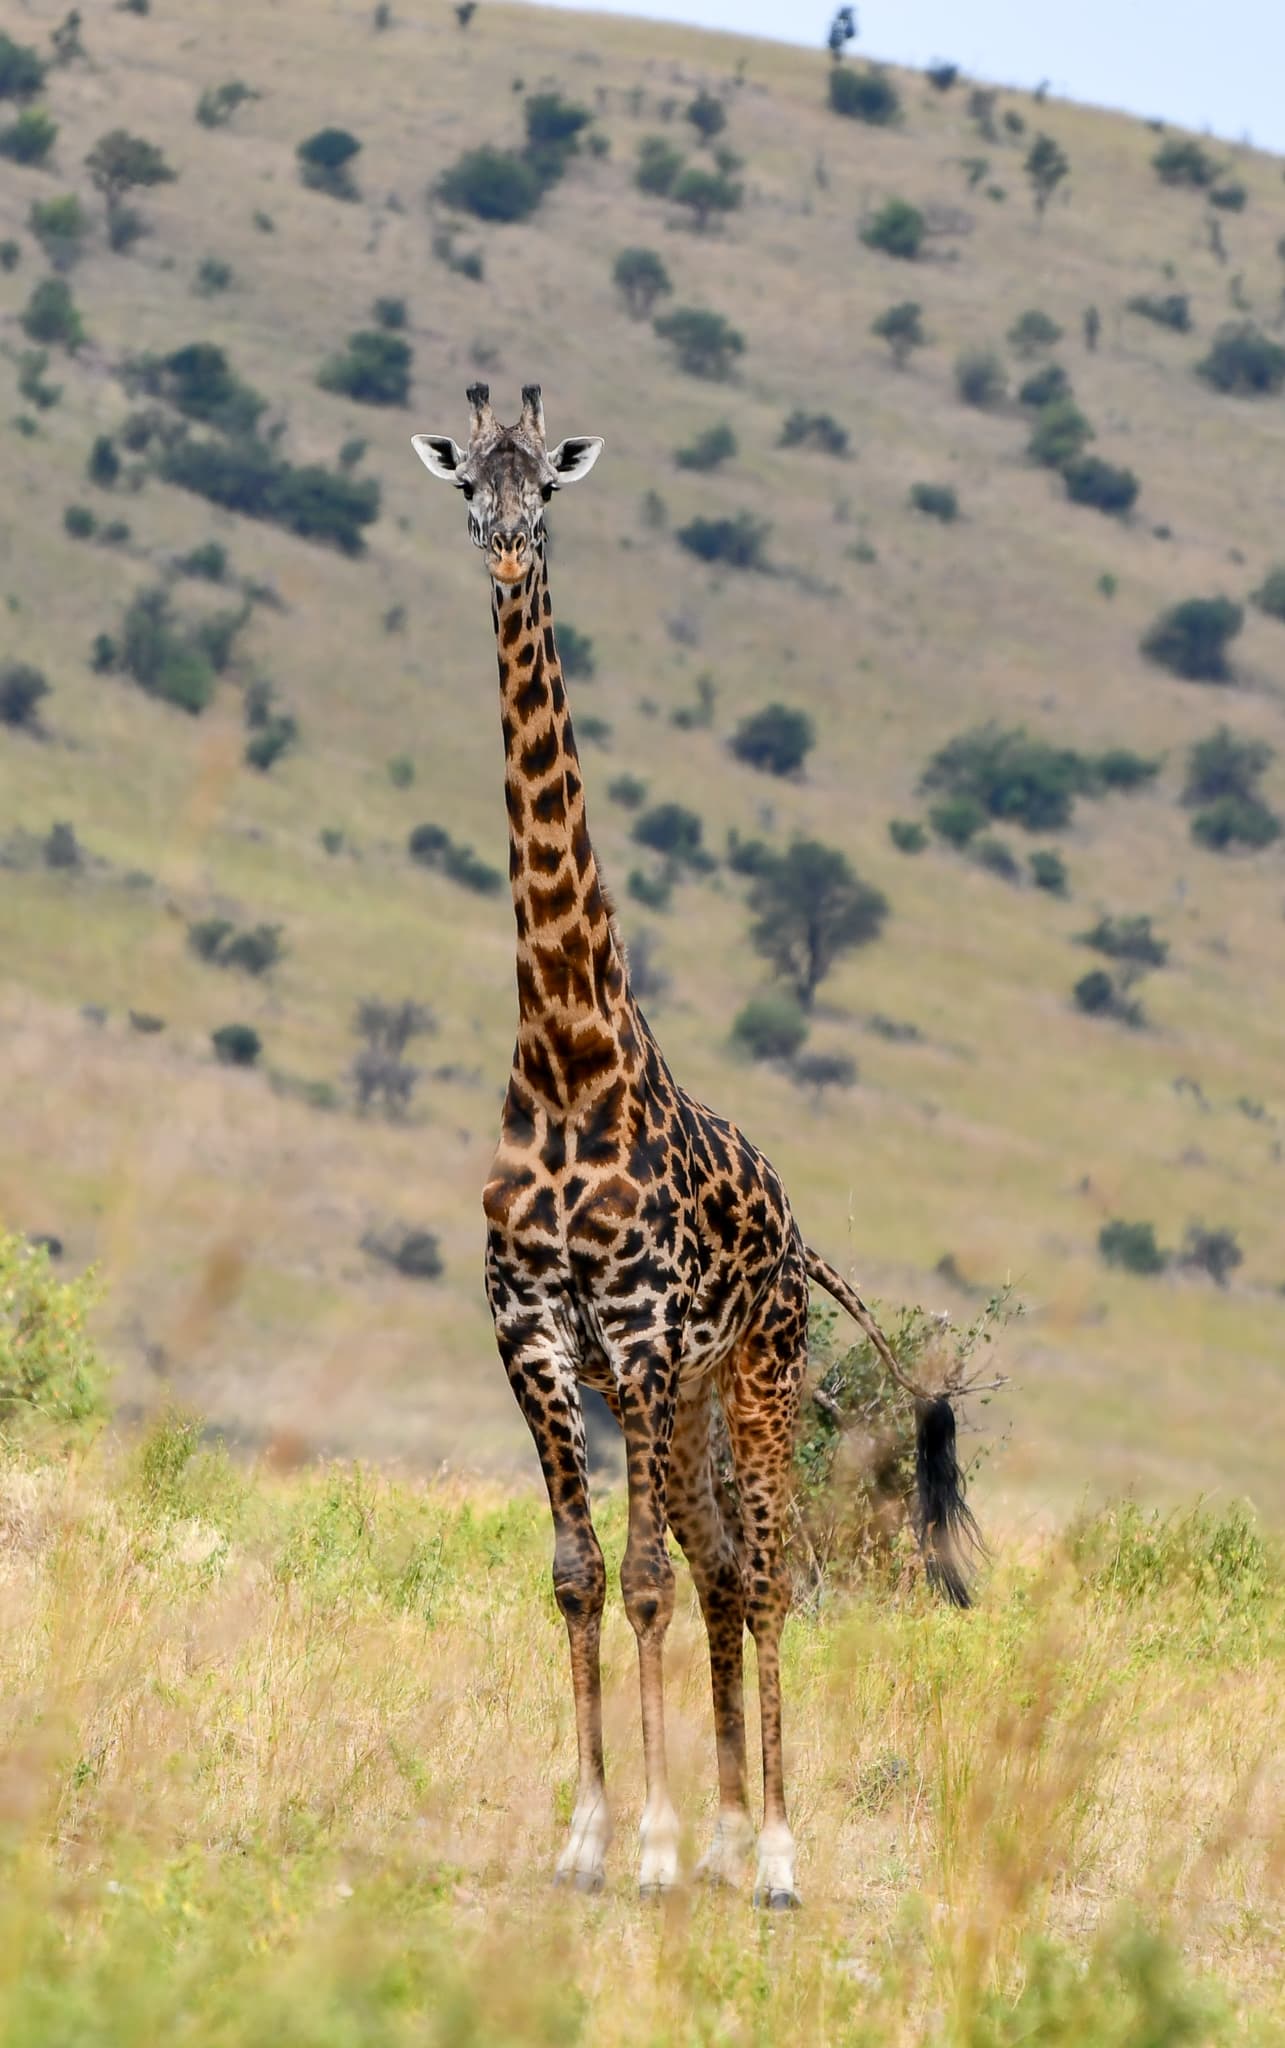 Giraffe seen on a Best Life Adventure.